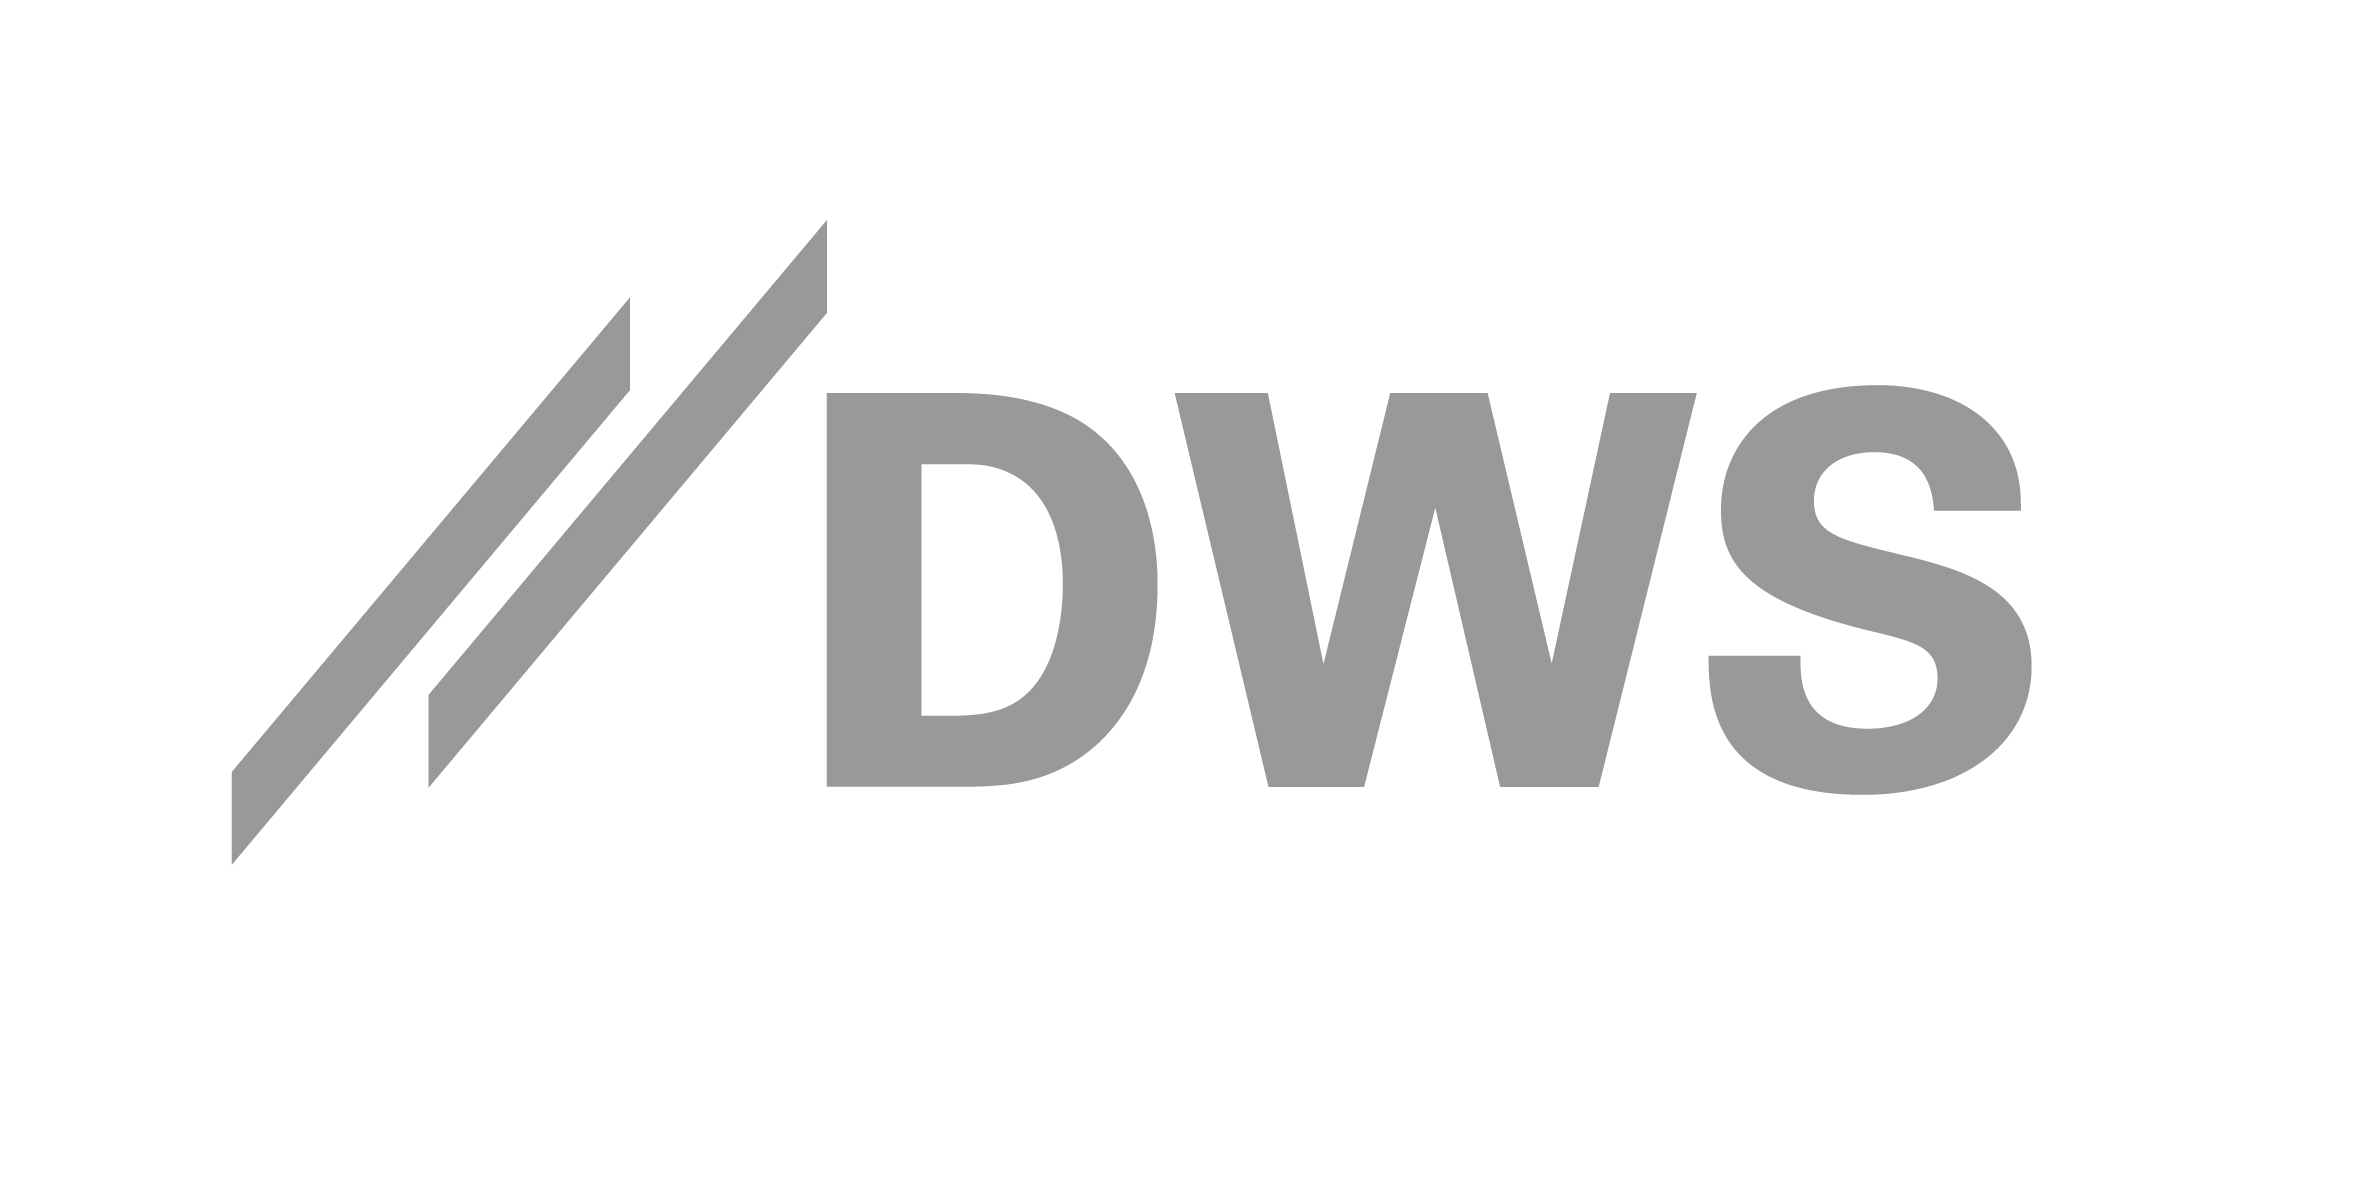 DWS utser ny chef för den nordiska marknaden. DWS meddelar idag att Thomas Lindahl utsetts till ny Nordenchef och chef för DWS kontor i Stockholm.